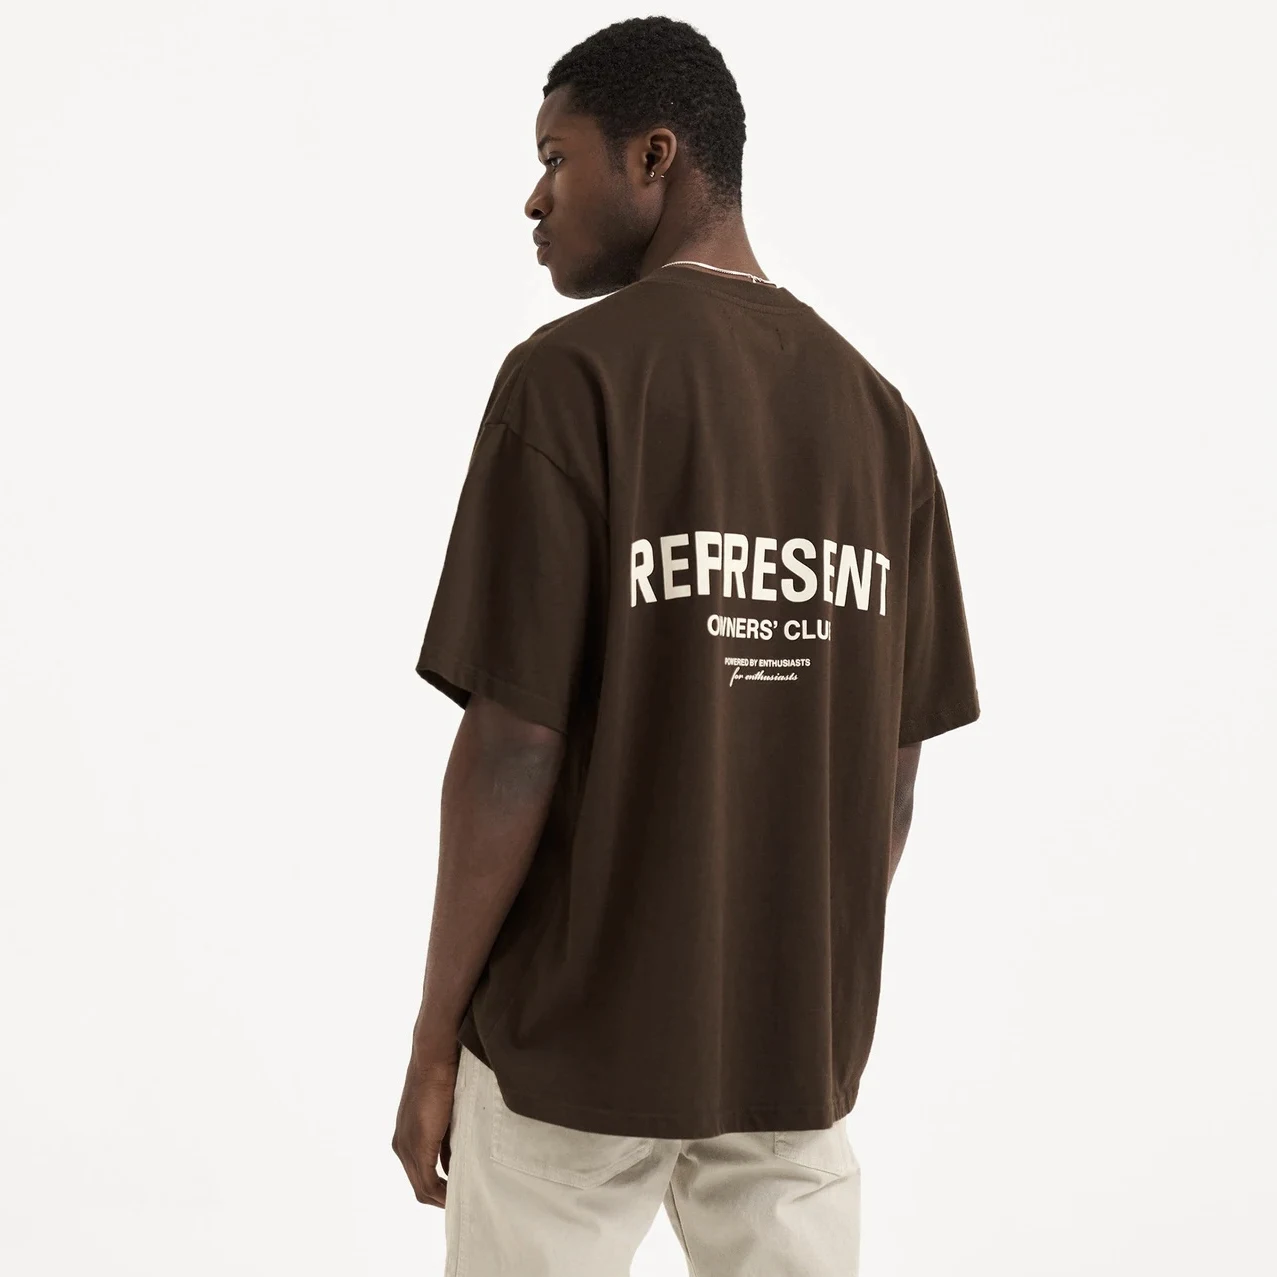 

Футболка для мужчин Kanye West хип-хоп с логотипом владельца клуба свободная уличная одежда в стиле оверсайз винтажные старые повседневные женские топы с коротким рукавом Футболка